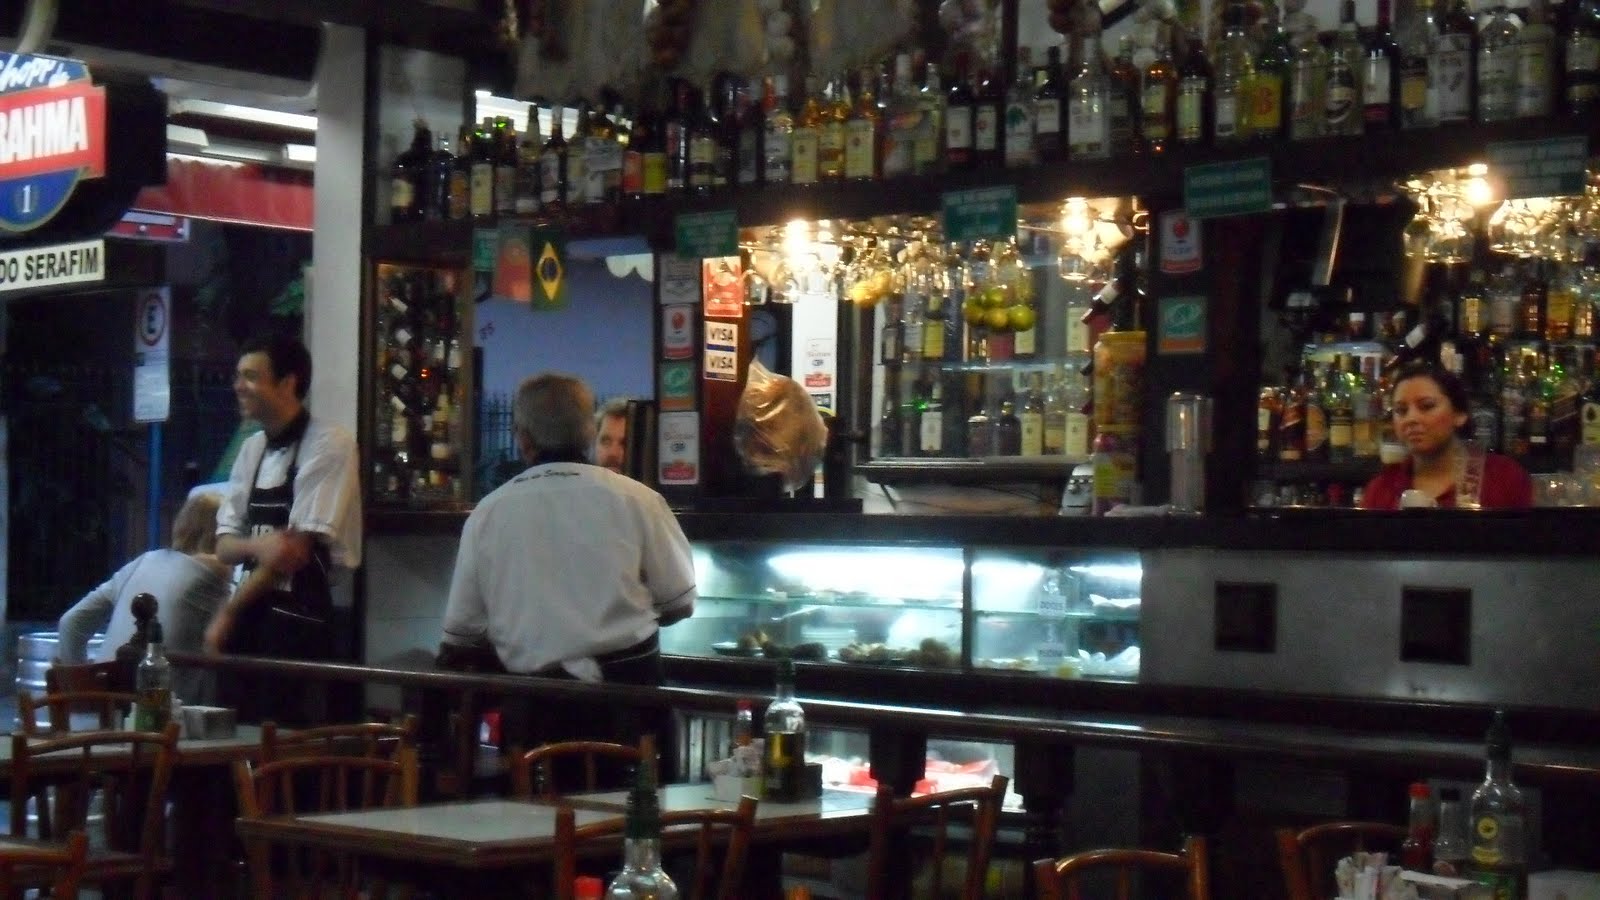 Bar do Serafim